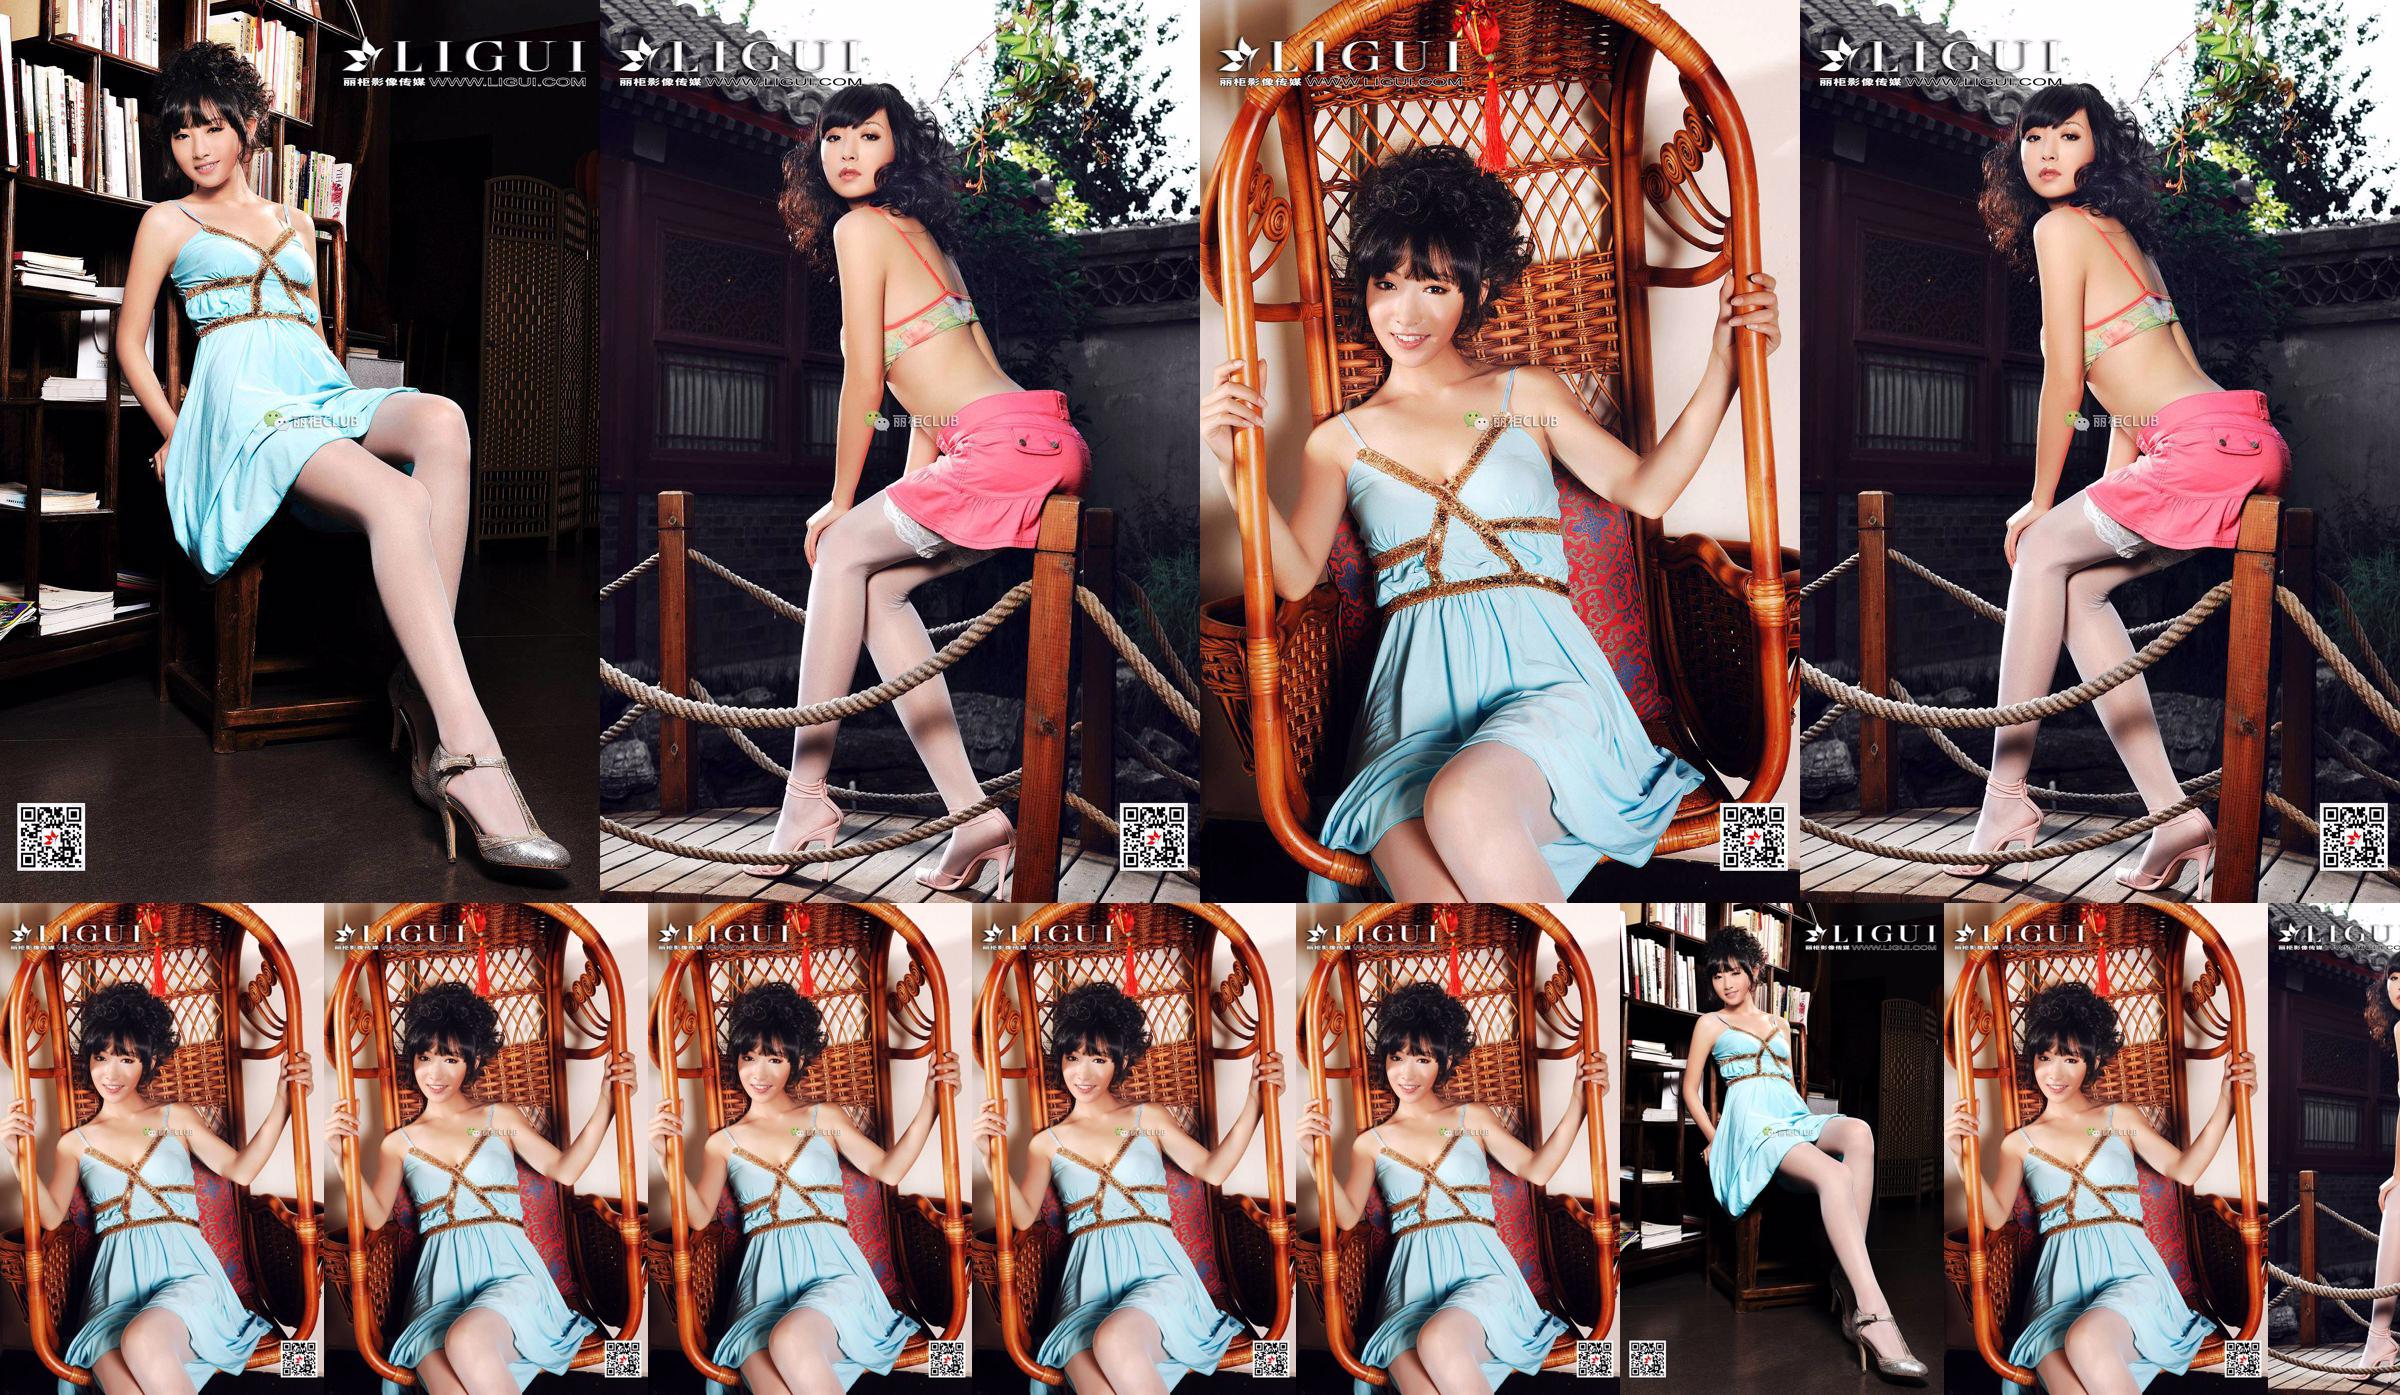 นางแบบขา Liu Yao "Classical Beauty Silk" [丽柜 LIGUI] Beautiful Legs in Stockings No.6d36b7 หน้า 2